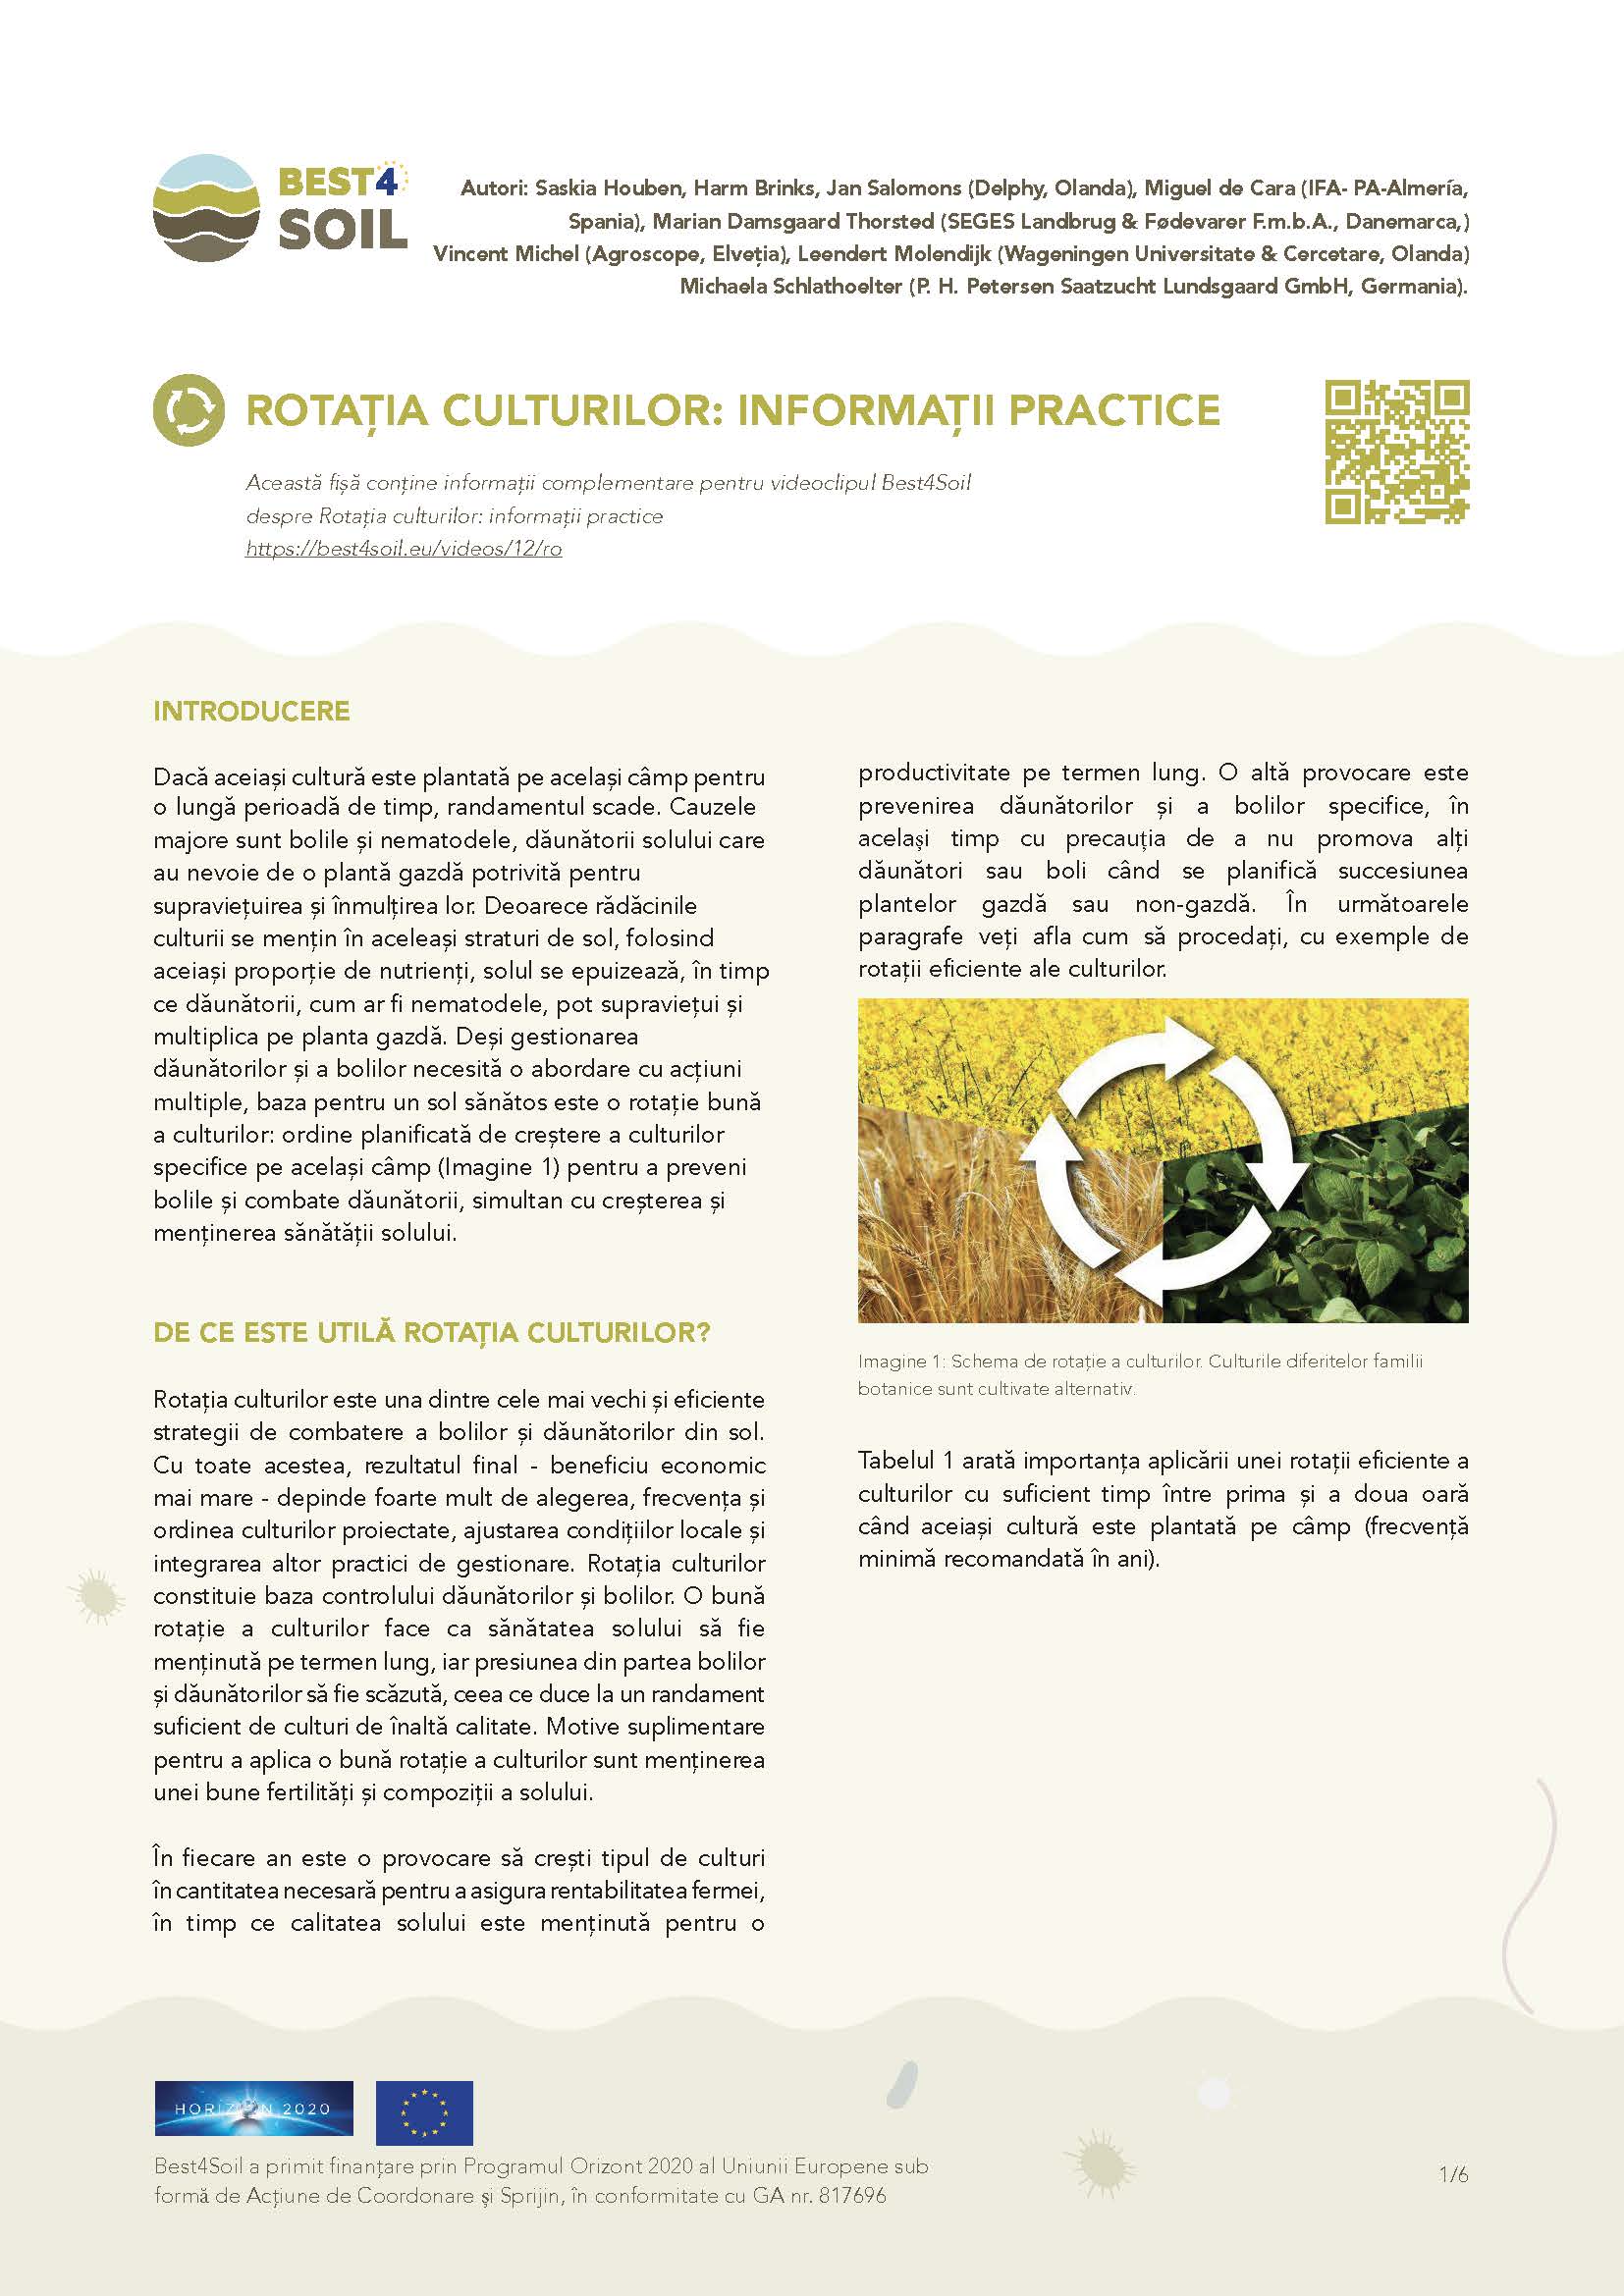 Rotation des cultures : informations pratiques (fiche d'information Best4Soil)